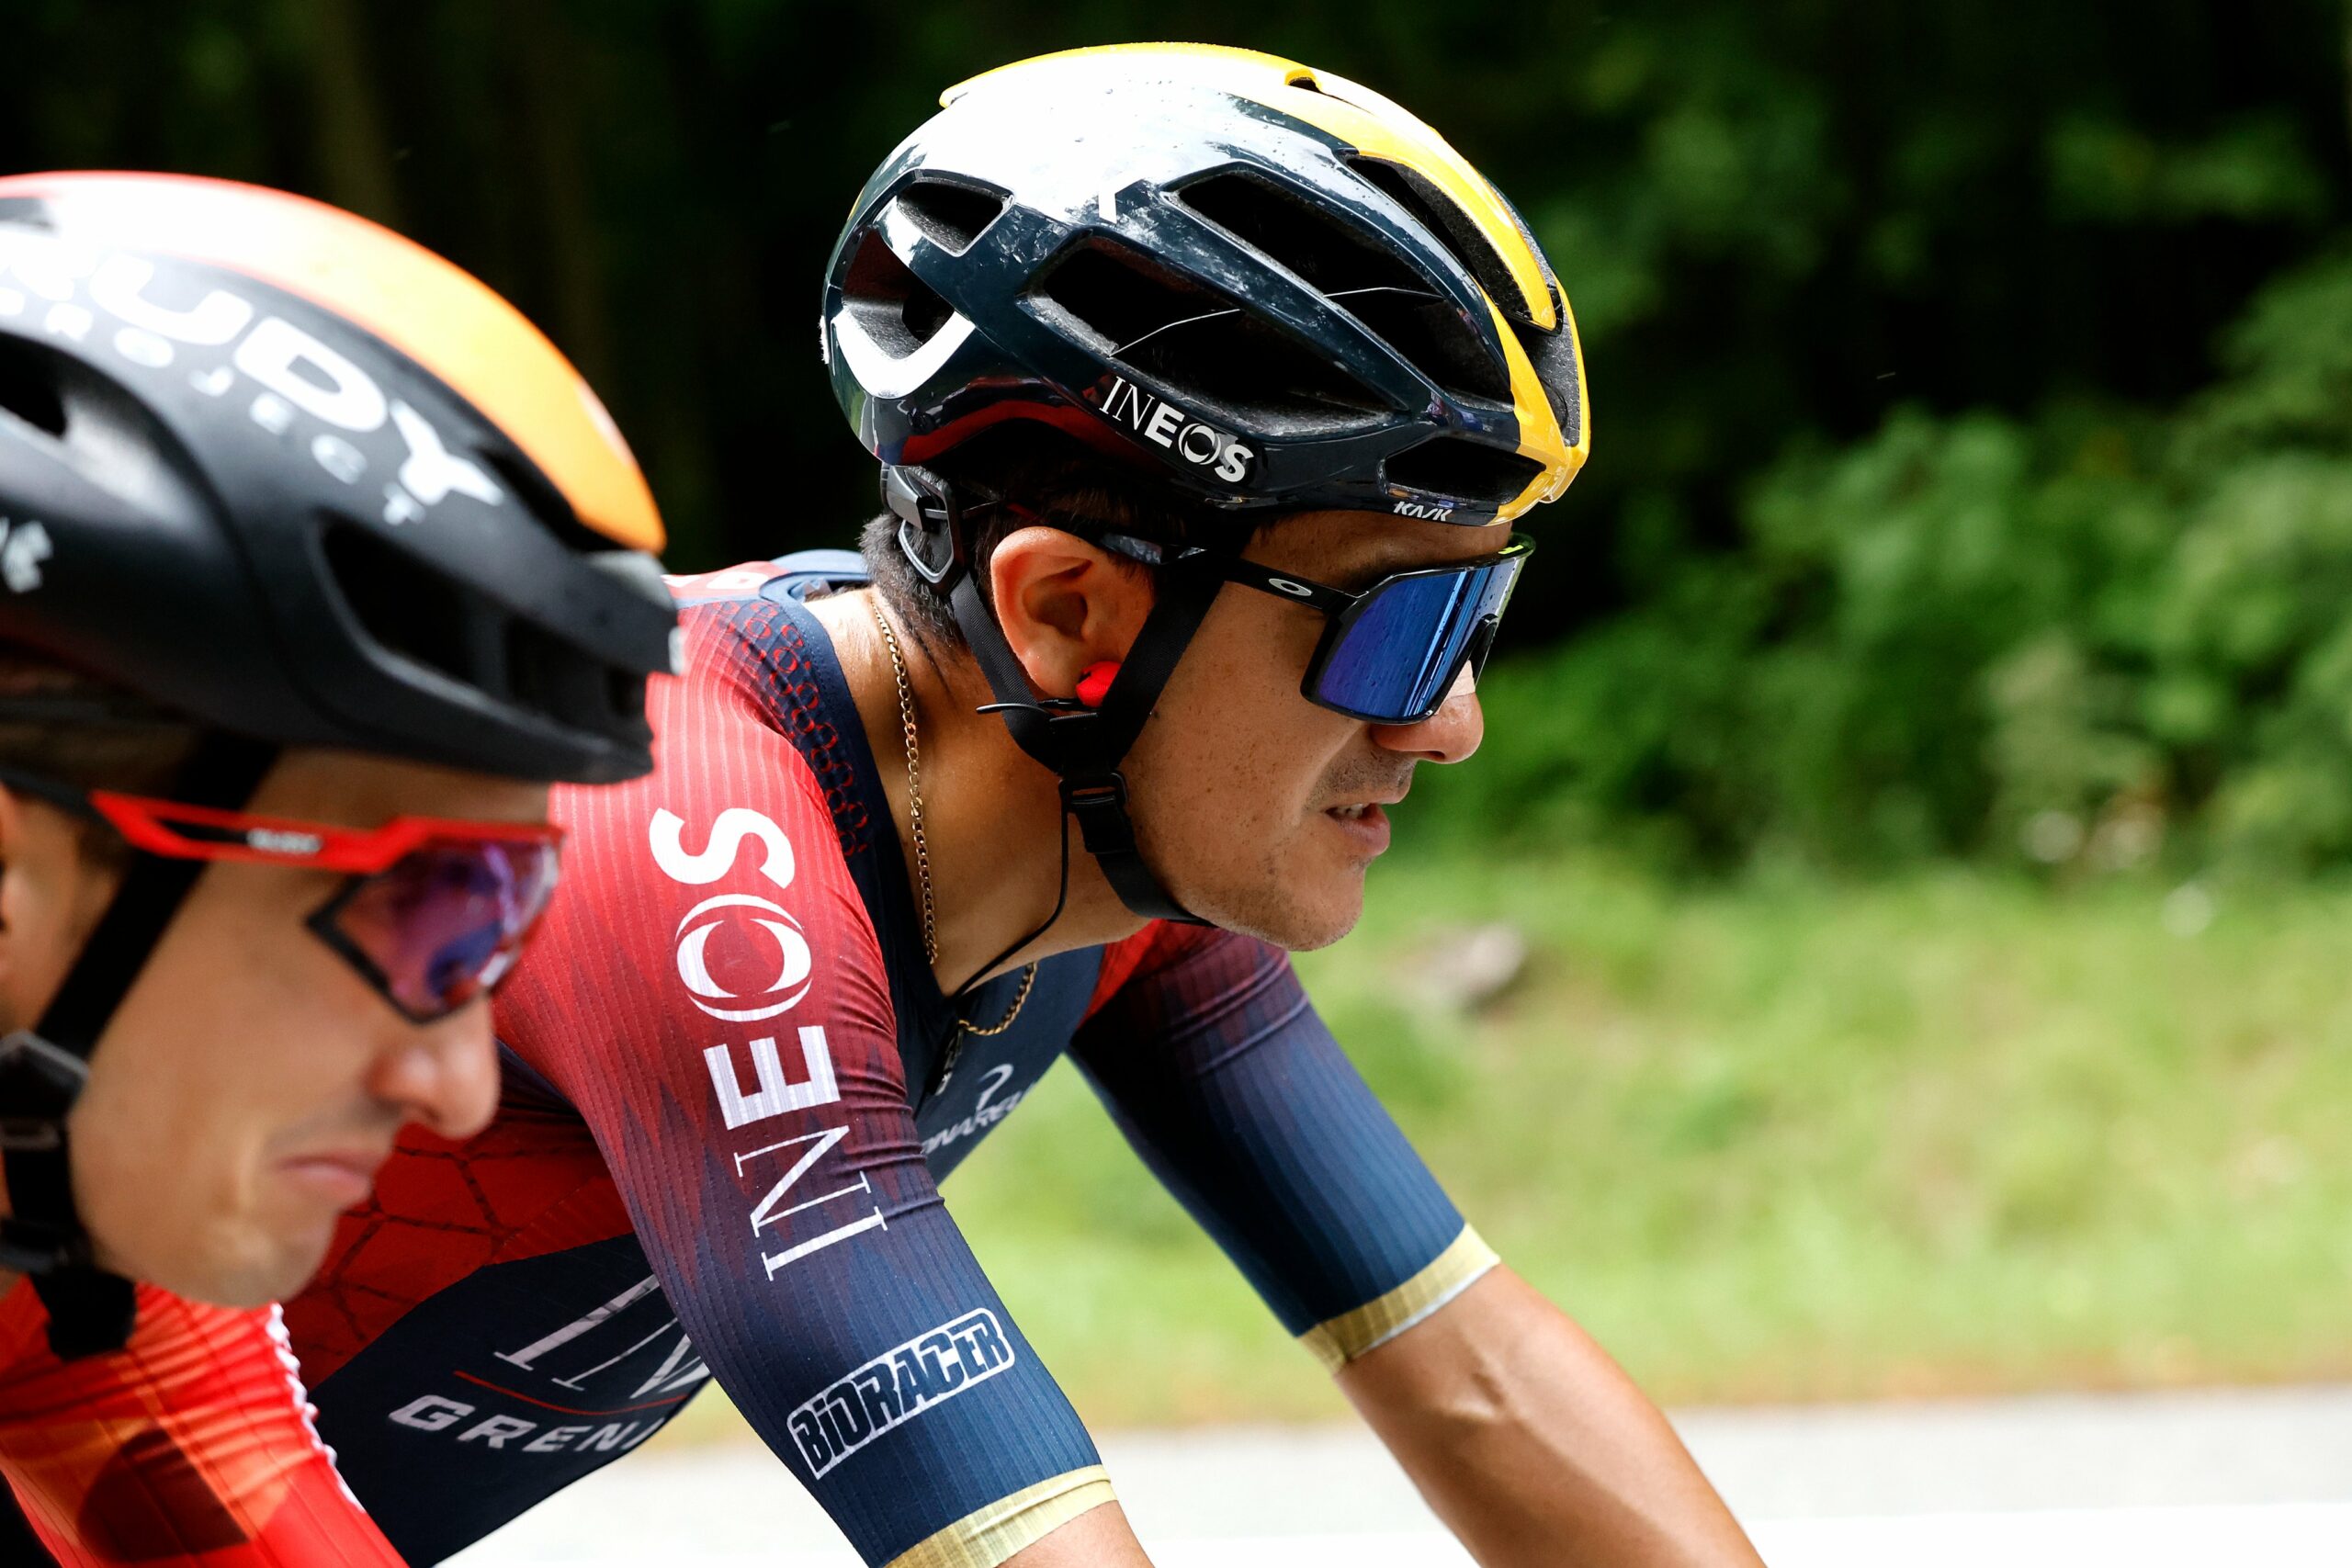 Richard Carapaz competirá en la Vuelta a España. Foto: Ineos